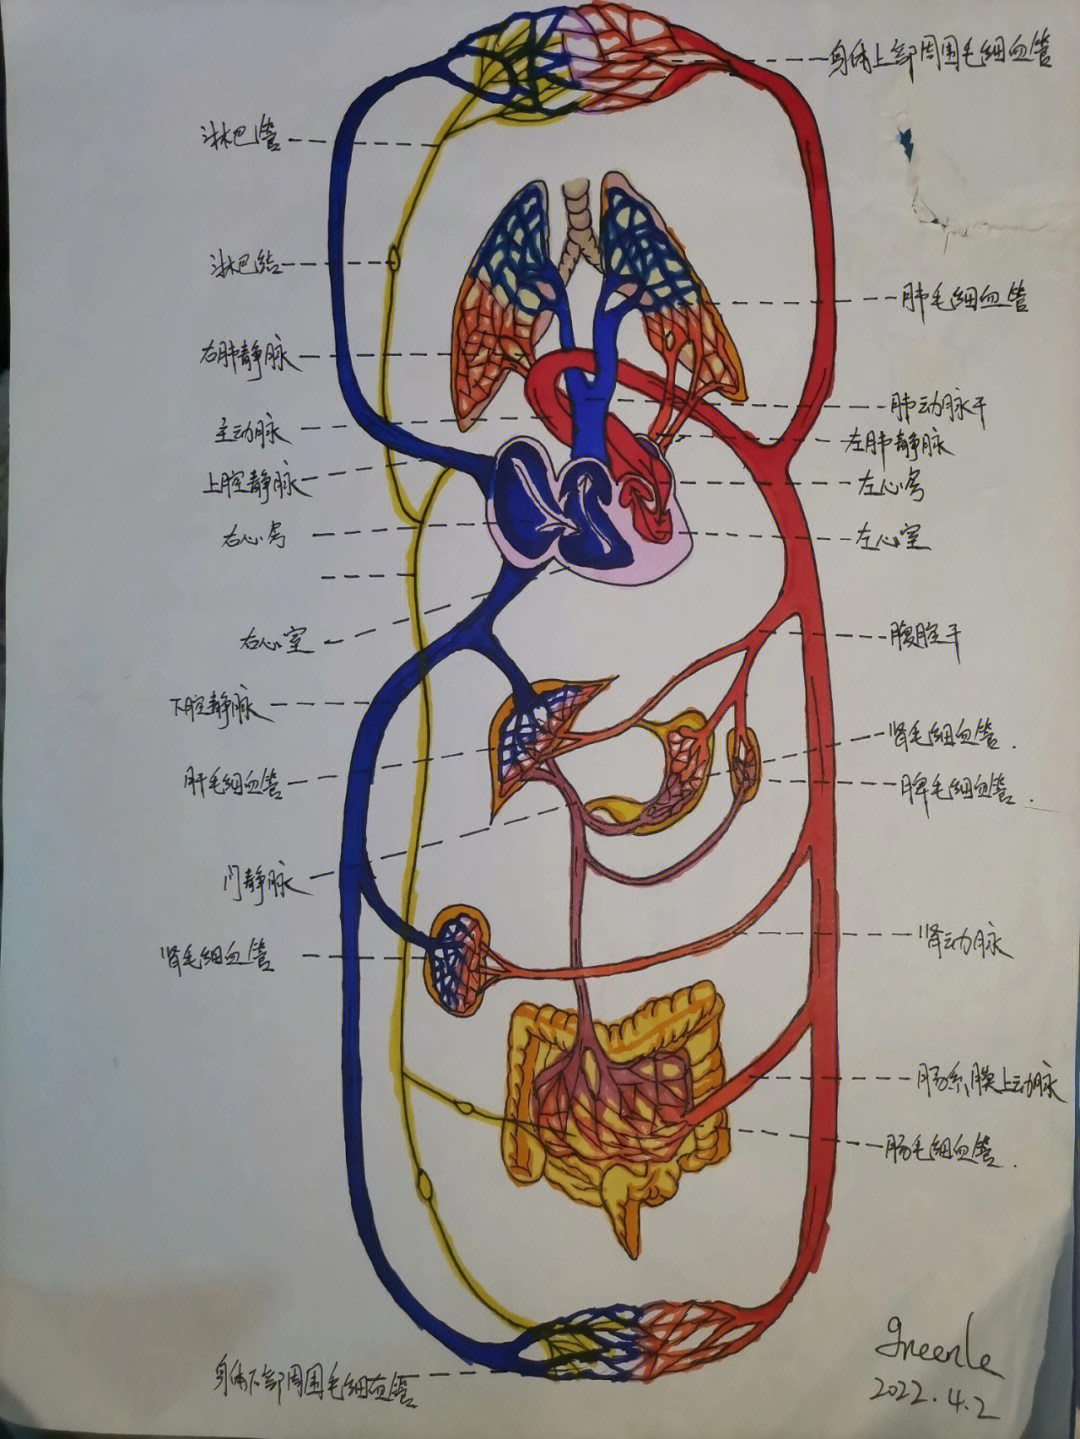 心脏血液循环图简笔画图片